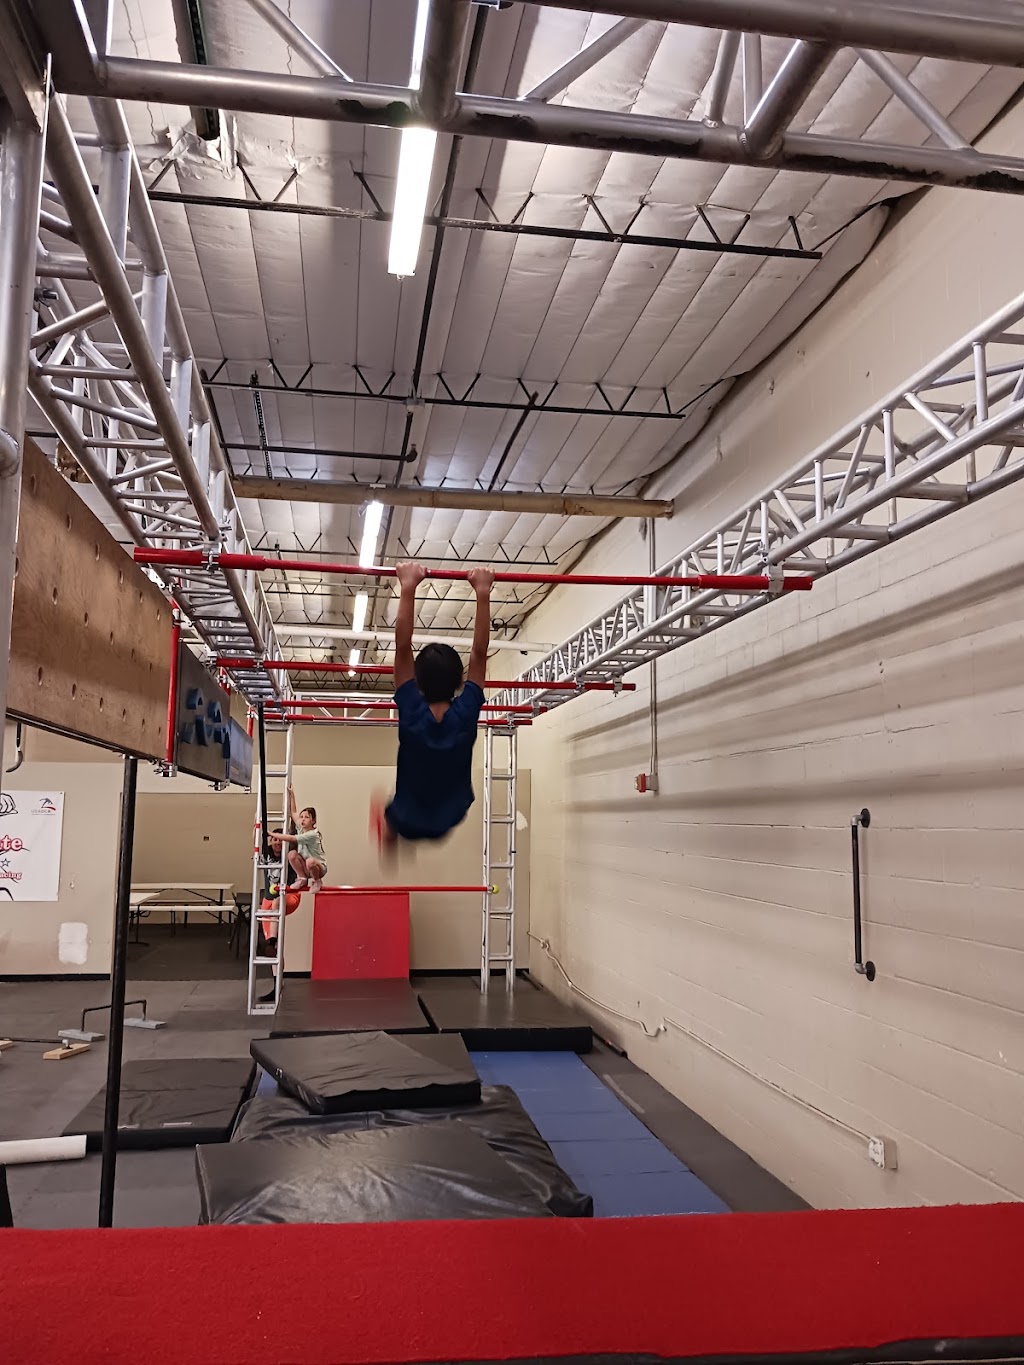 Ultimate Ninja Gym | 7901 4th St NW, Los Ranchos De Albuquerque, NM 87114 | Phone: (505) 433-4175